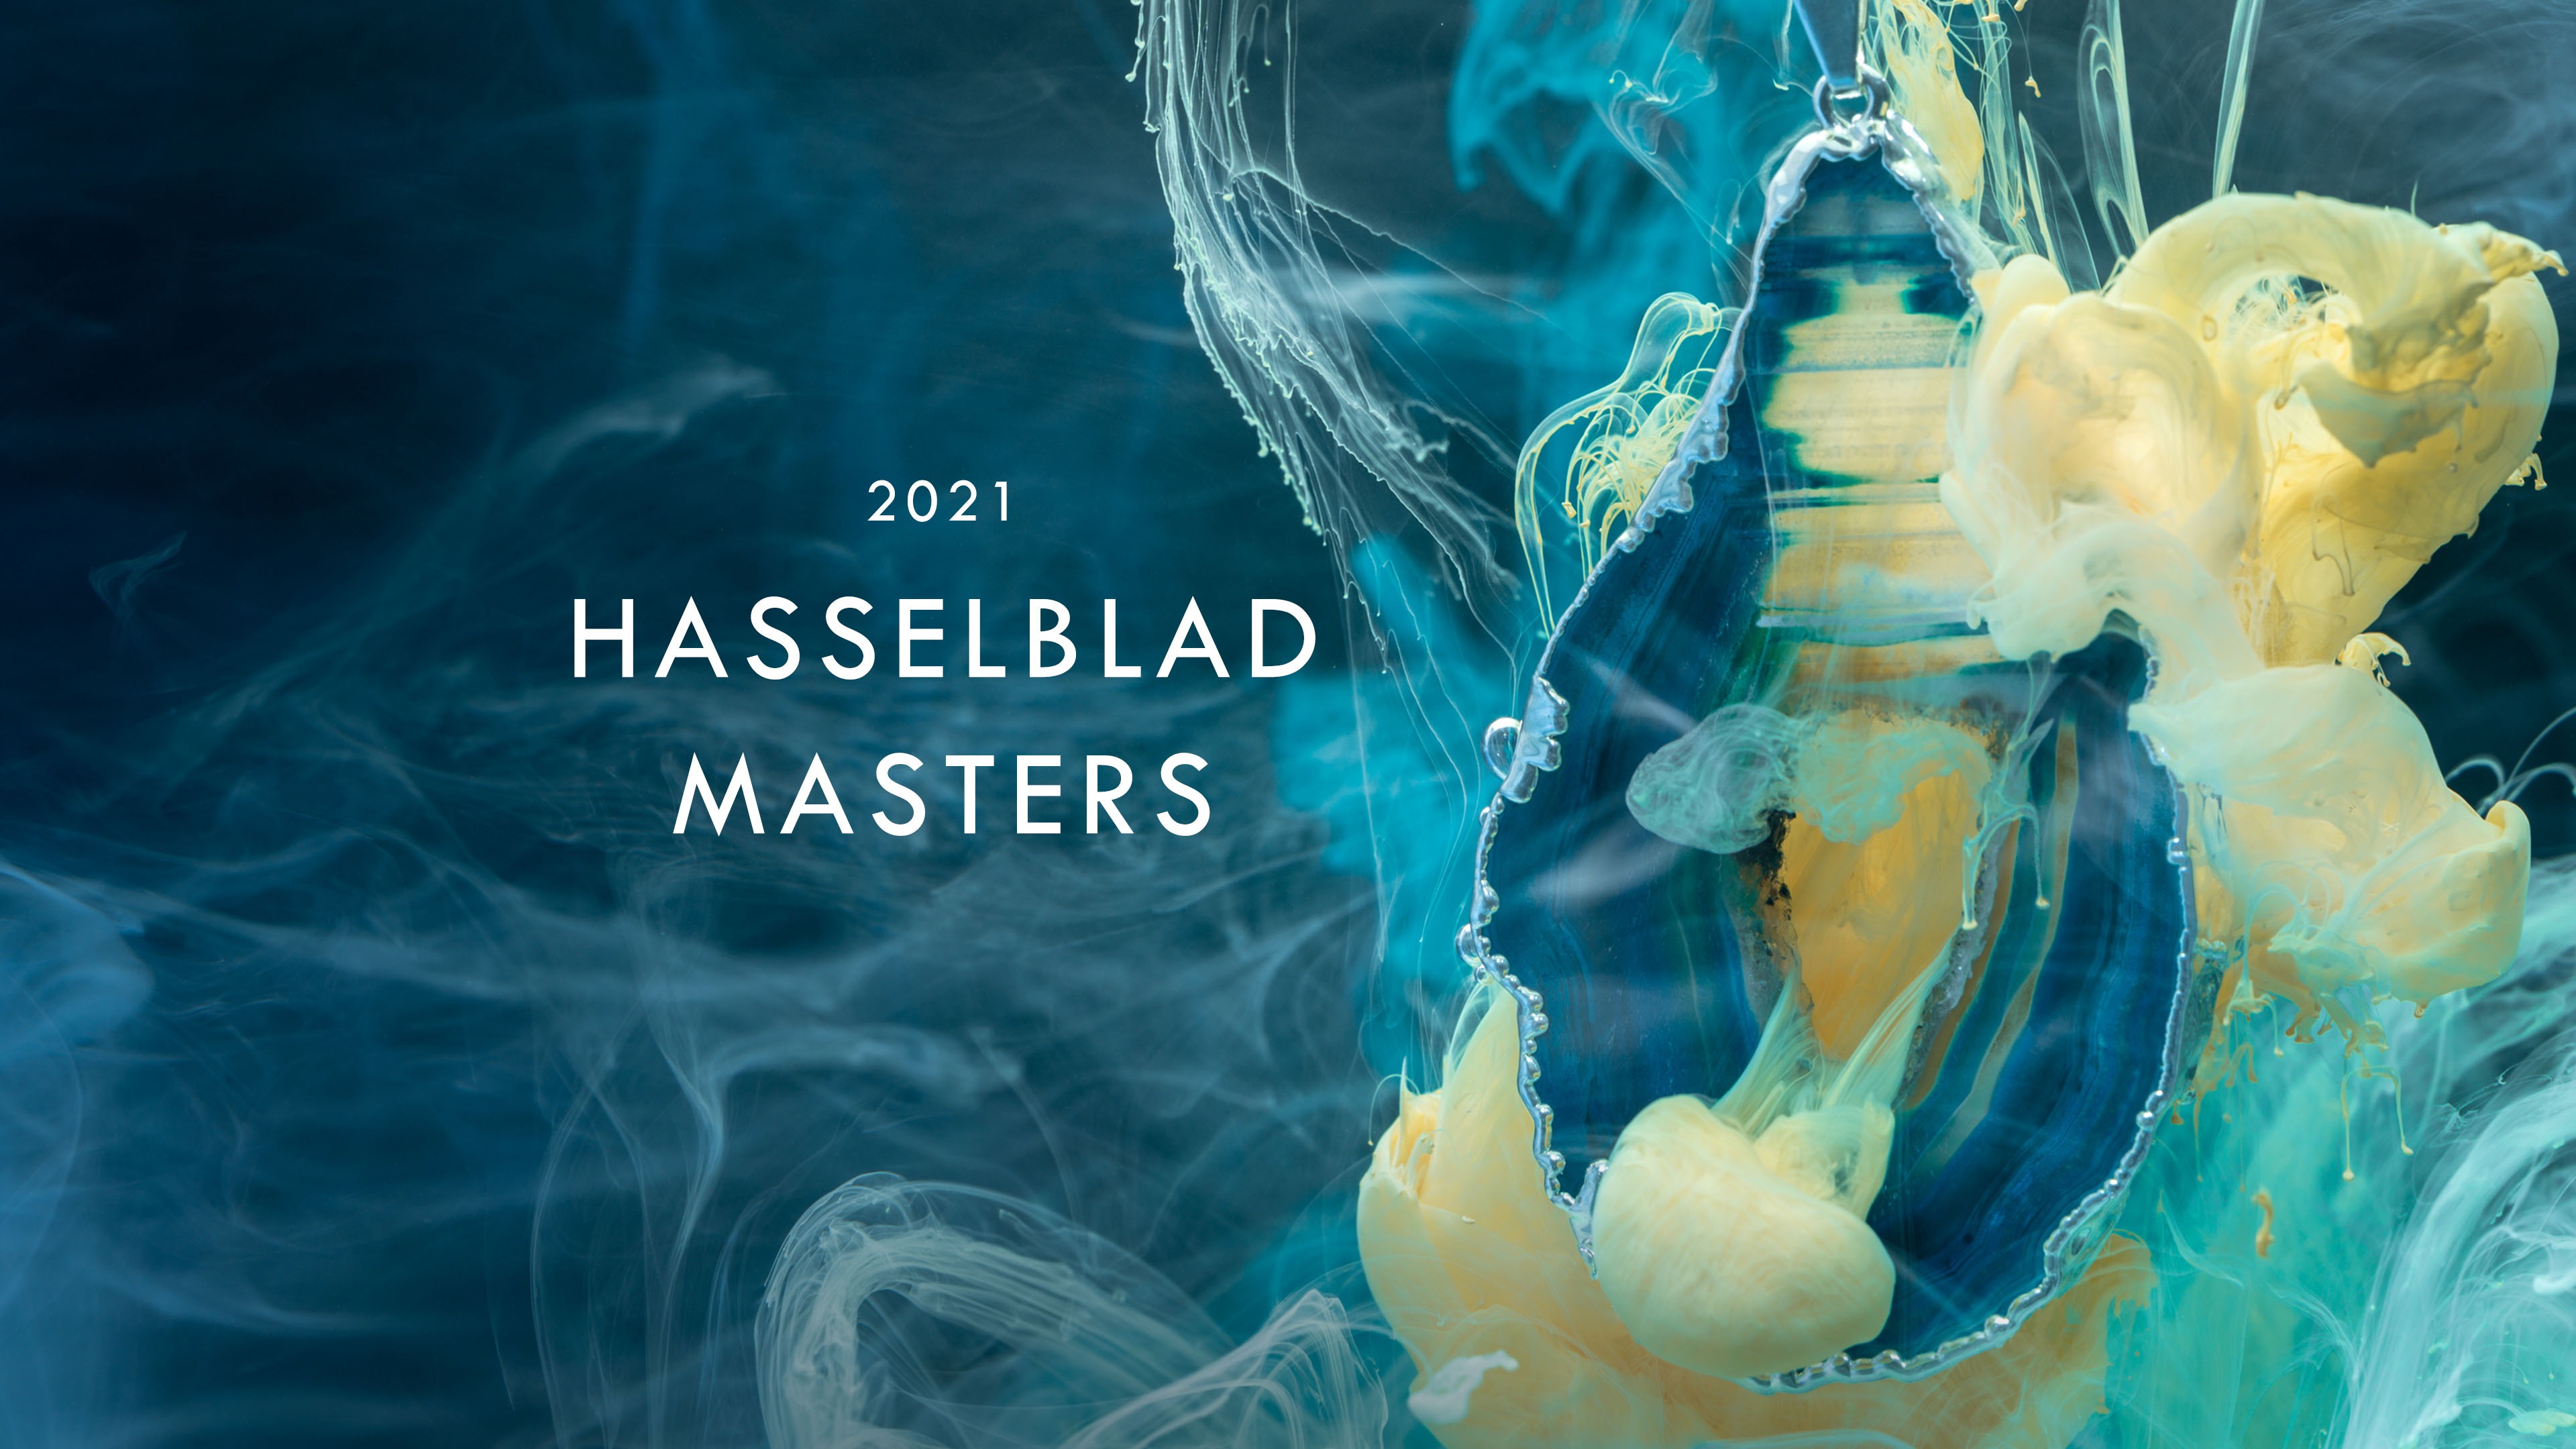 Hasselblad khởi động cuộc thi ảnh Master 2021 với phần thưởng là 12 máy ảnh medium format